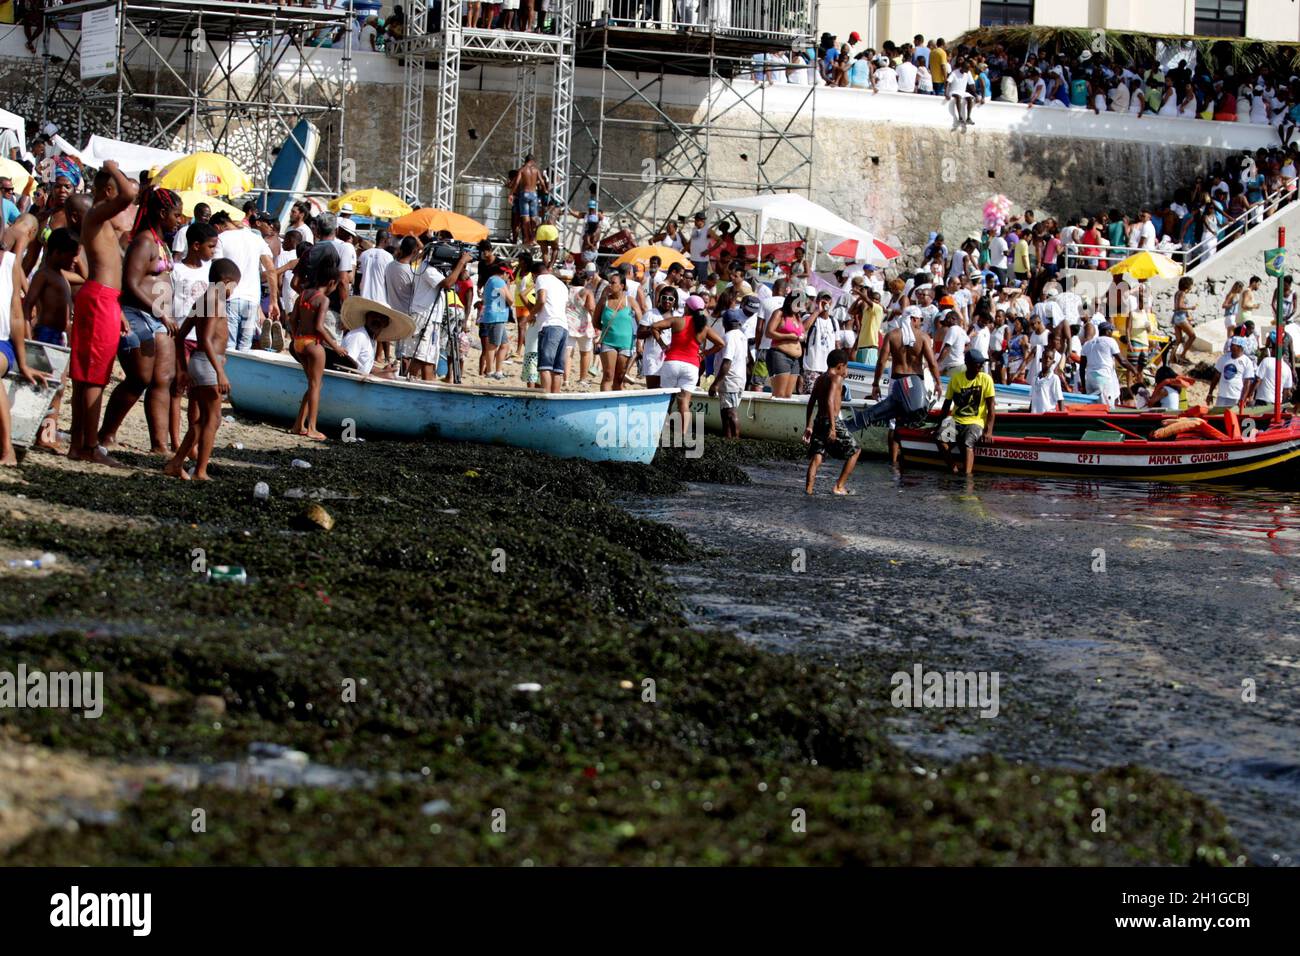 salvador, bahia / brésil - 2 février 2017: Les supporters de candomble sont vus sur la plage Rio Vermelho dans la ville de Salvador lors d'une fête à hono Banque D'Images